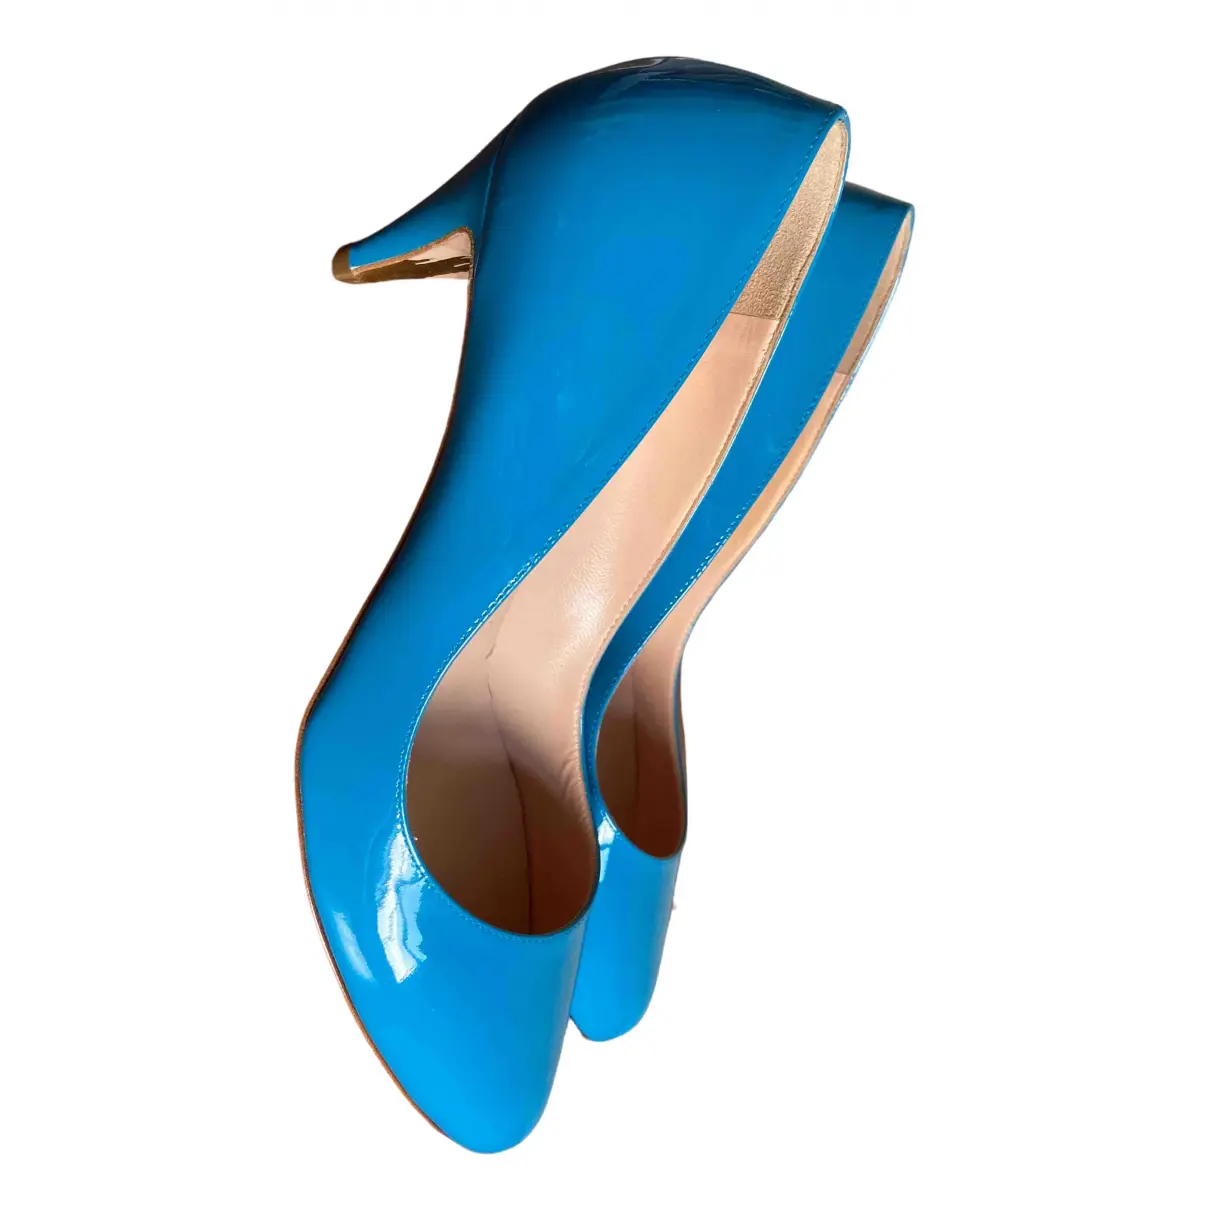 Buy Rupert Sanderson Patent leather heels online